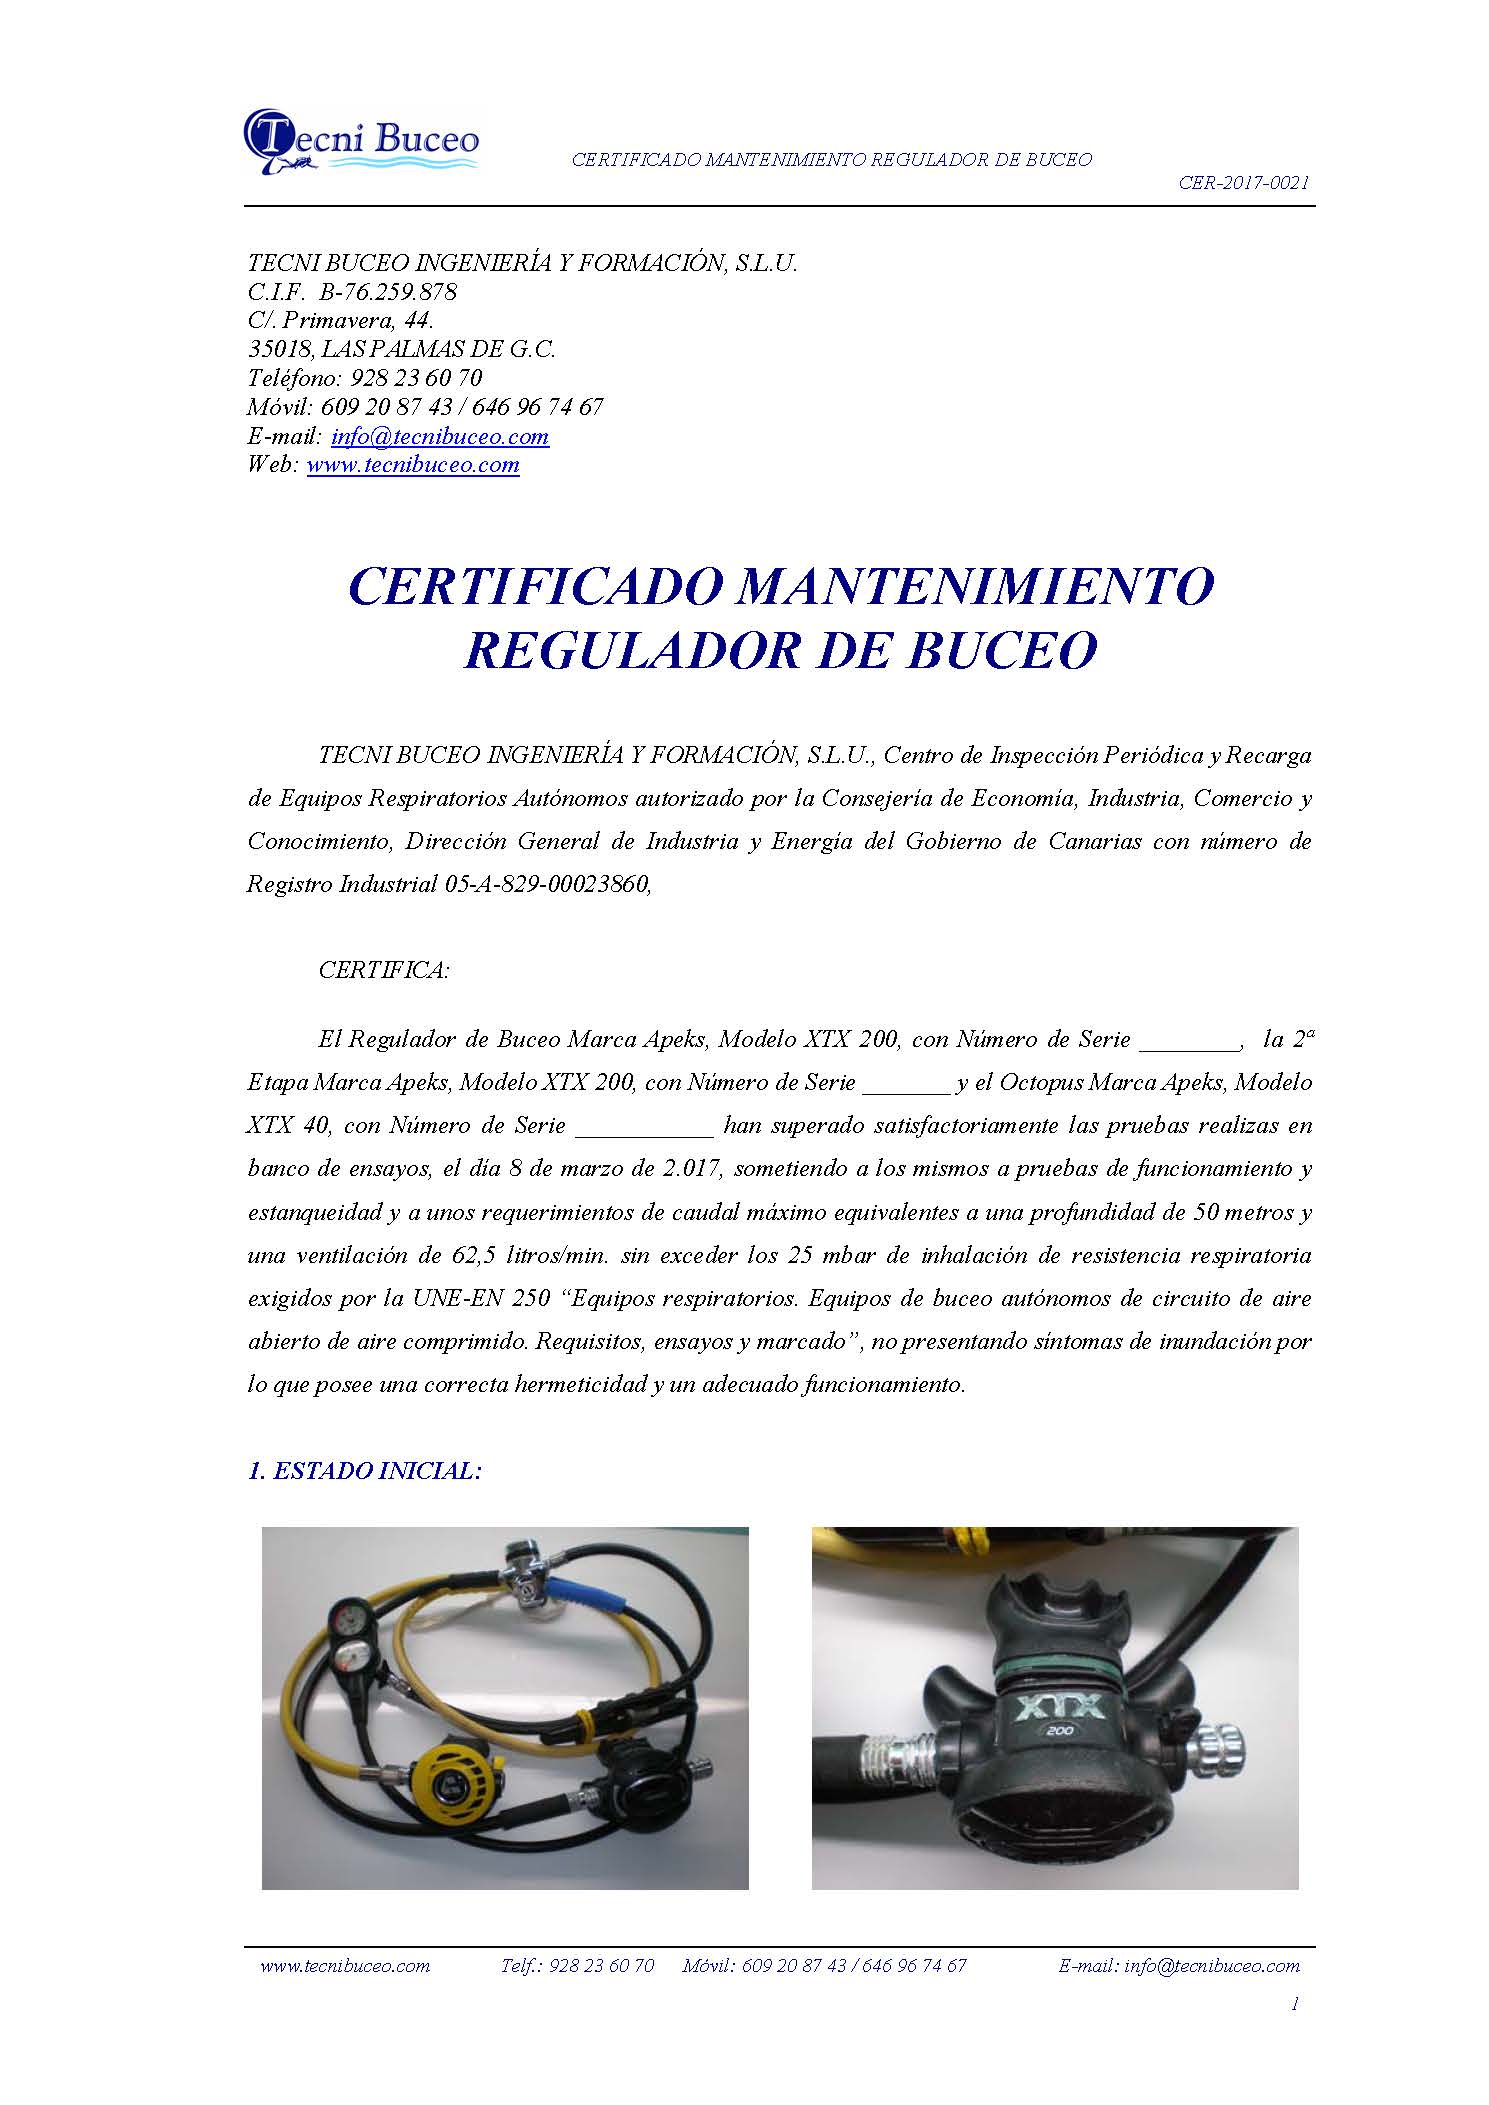 Ejemplo Certificado Mantenimiento Regulador de Buceo Tecni Buceo, S.L CER-2017-0021